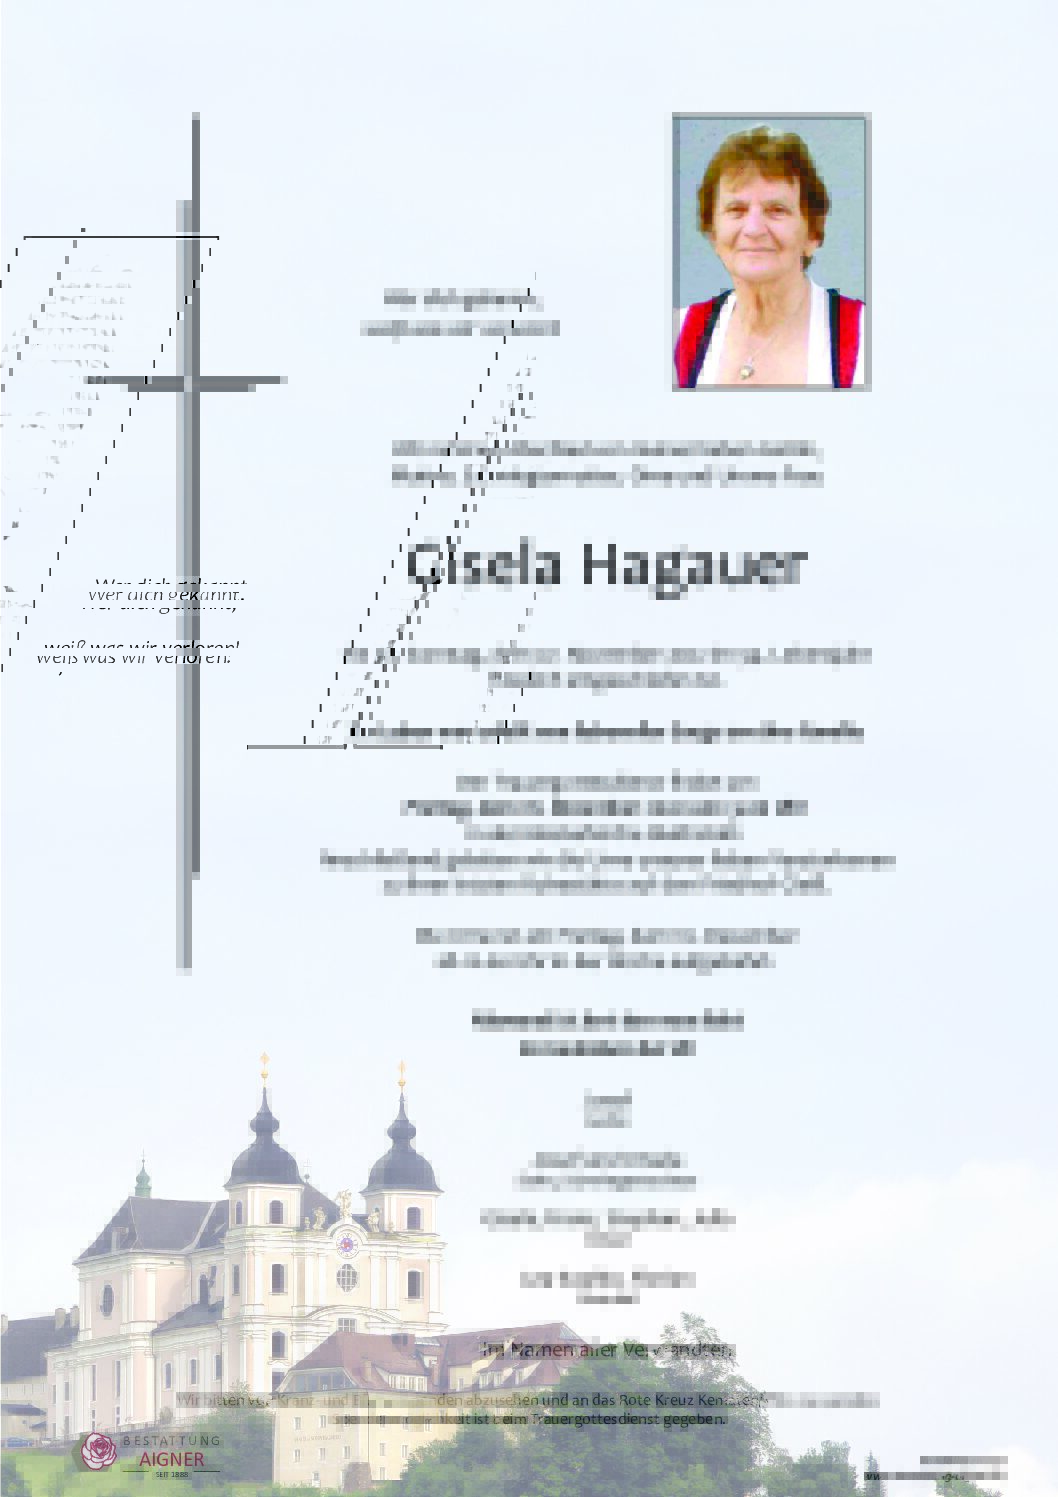 Gisela Hagauer